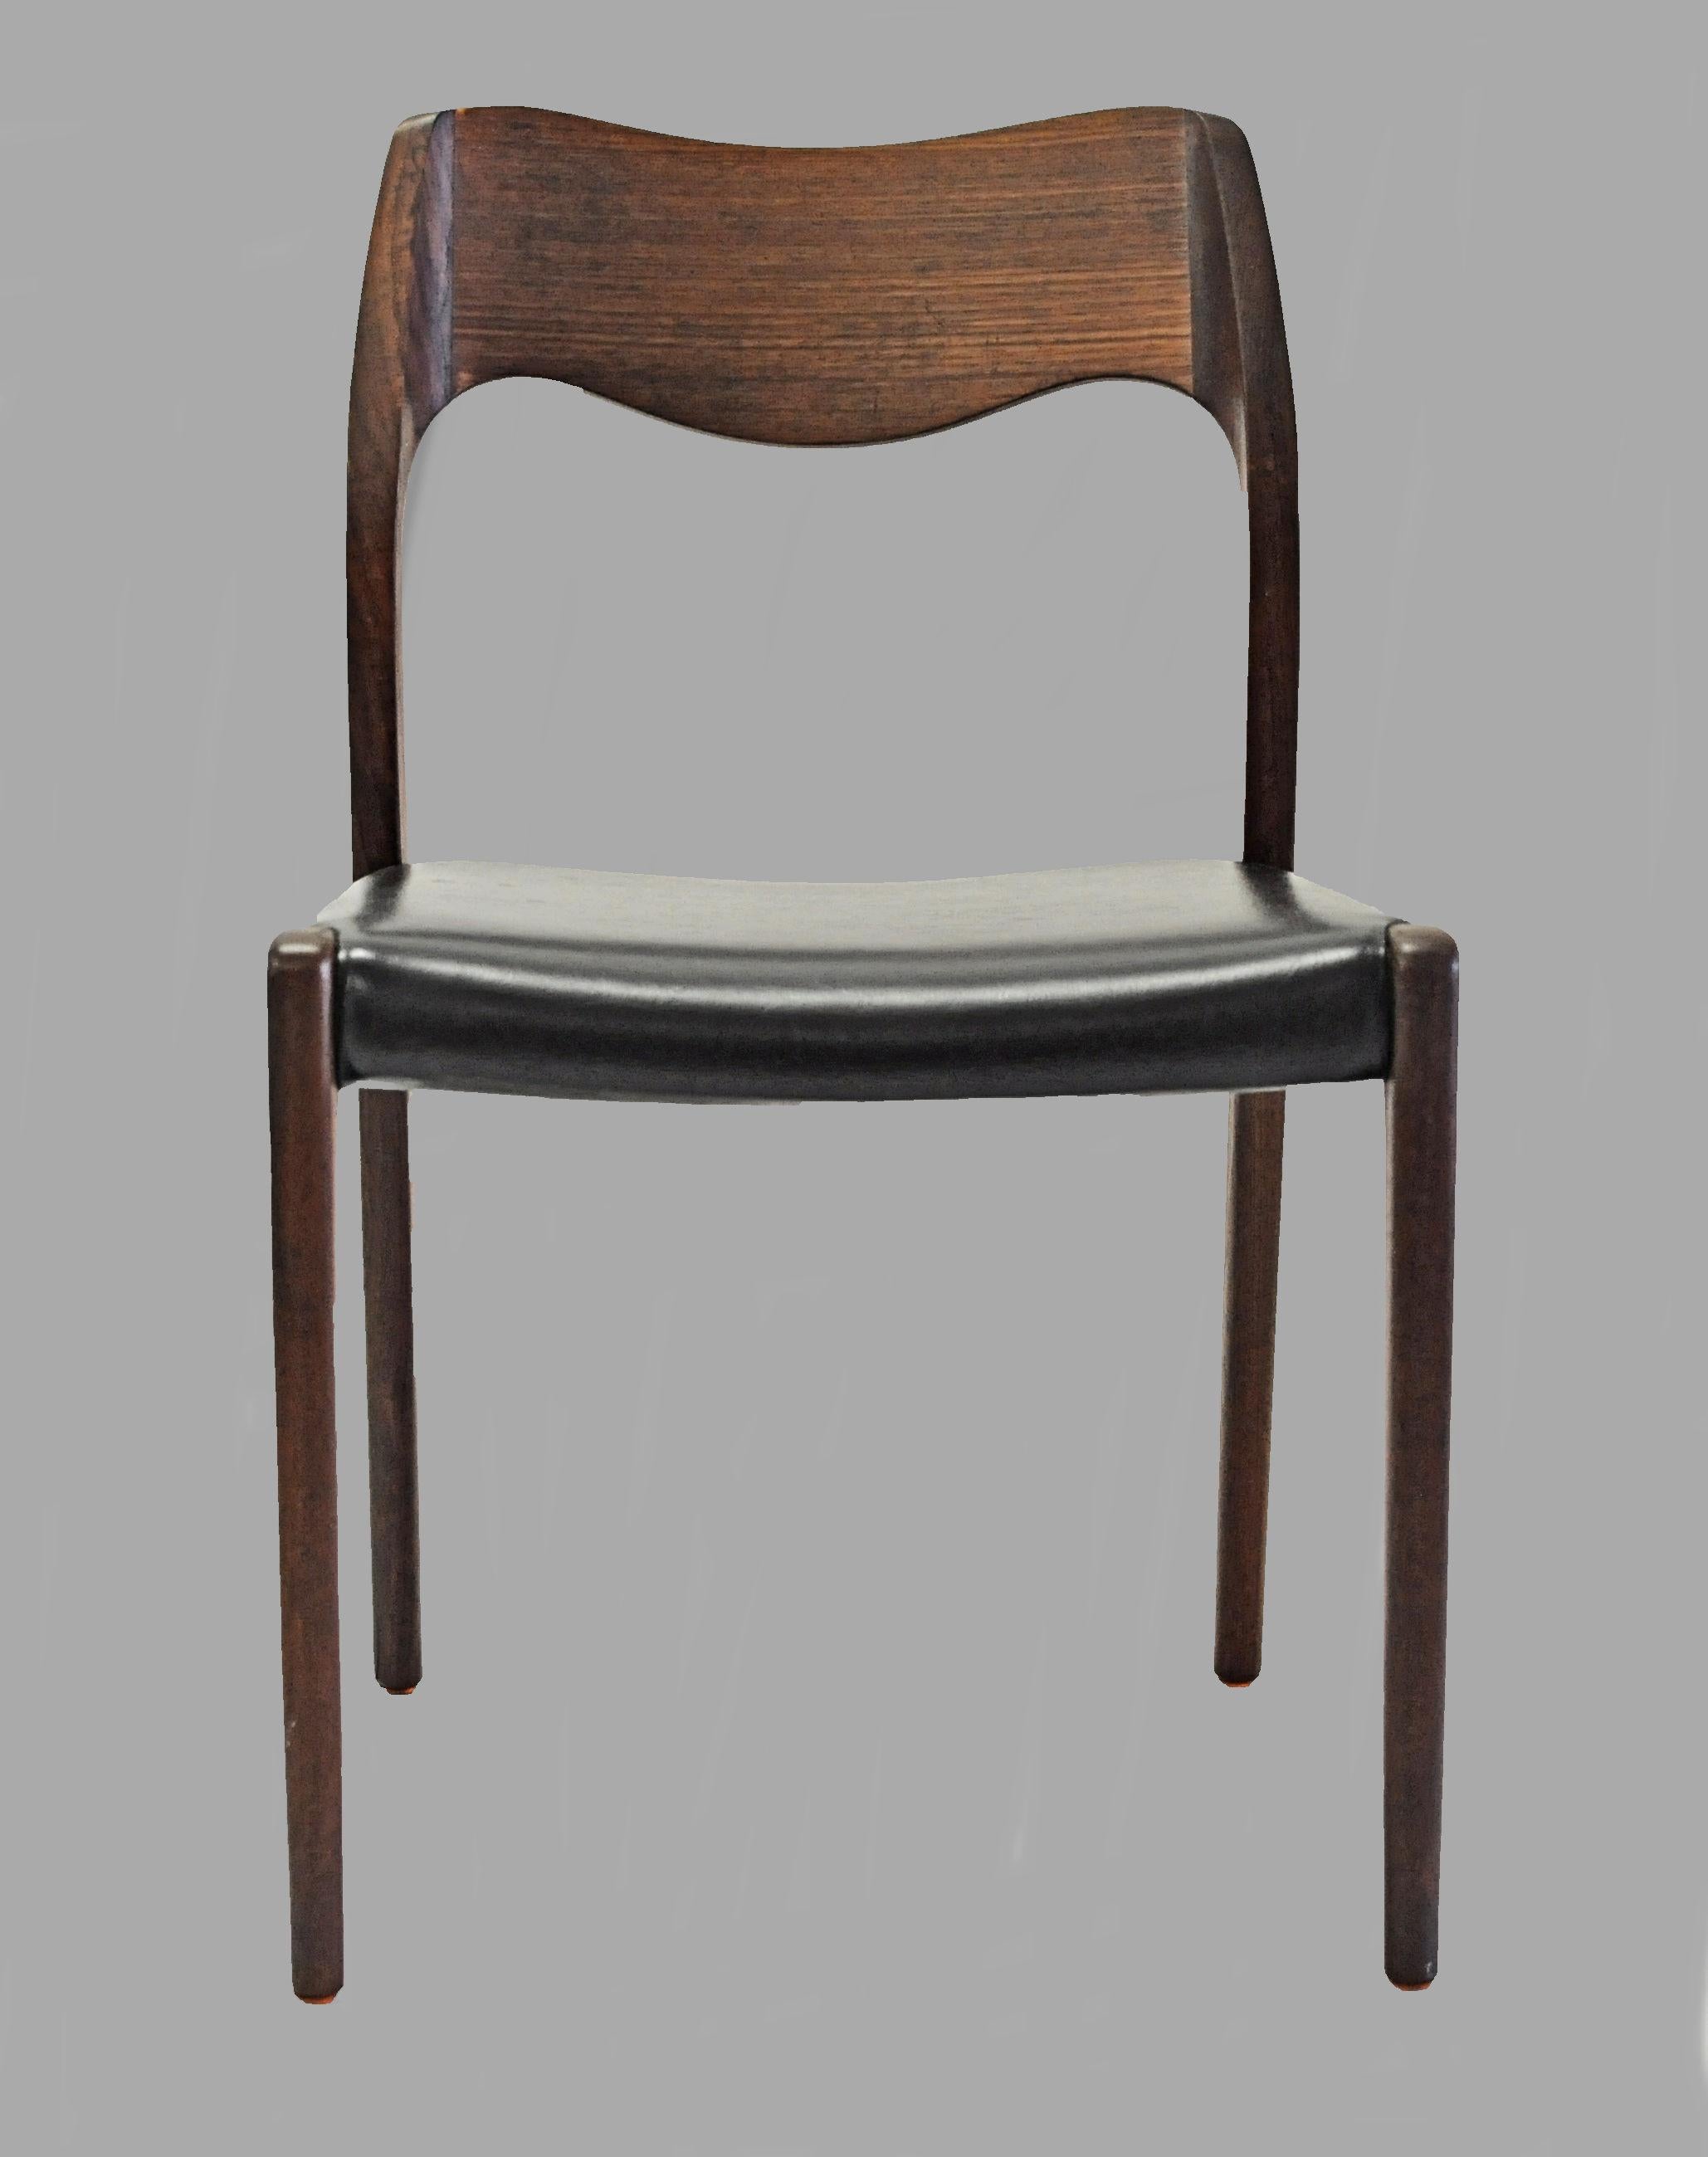 Ensemble de six chaises de salle à manger en teck entièrement restaurées, conçues par Niels Otto Møller en 1951.

Les chaises sont dotées d'un cadre et d'un dossier solides en teck, avec des pieds droits et un élégant dossier de forme organique